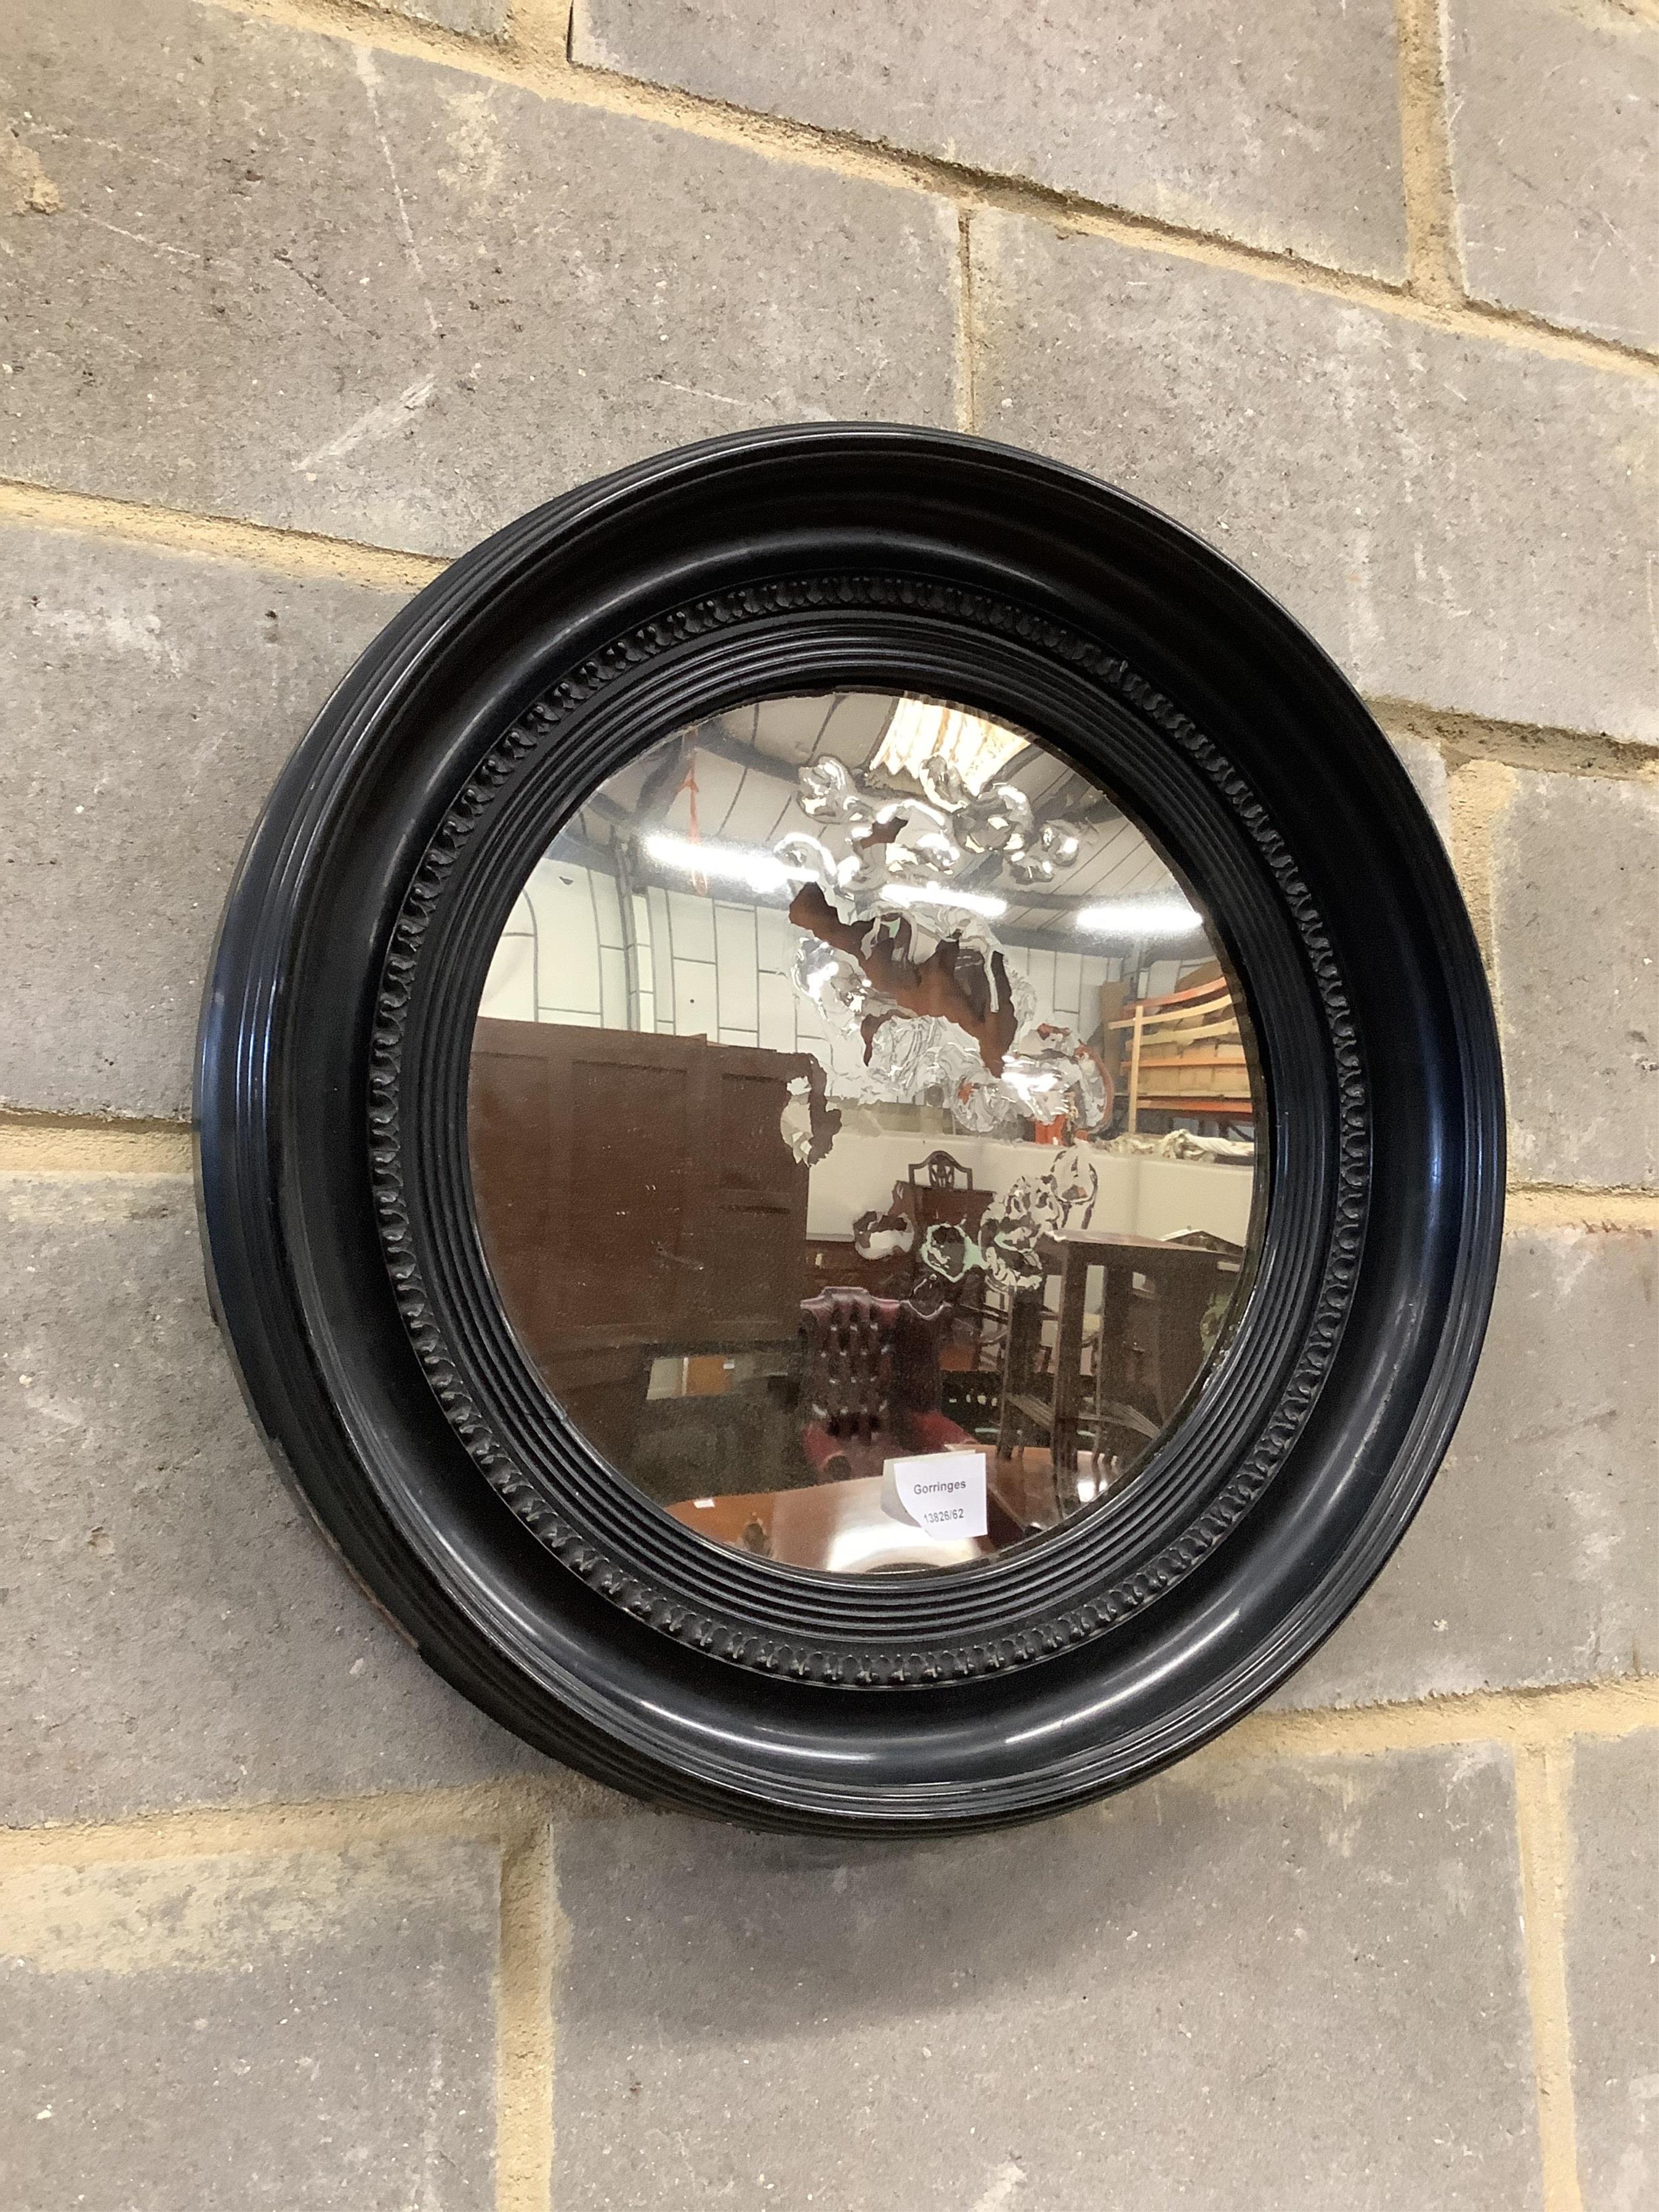 A circular convex wall mirror, diameter 51cm. Condition - poor